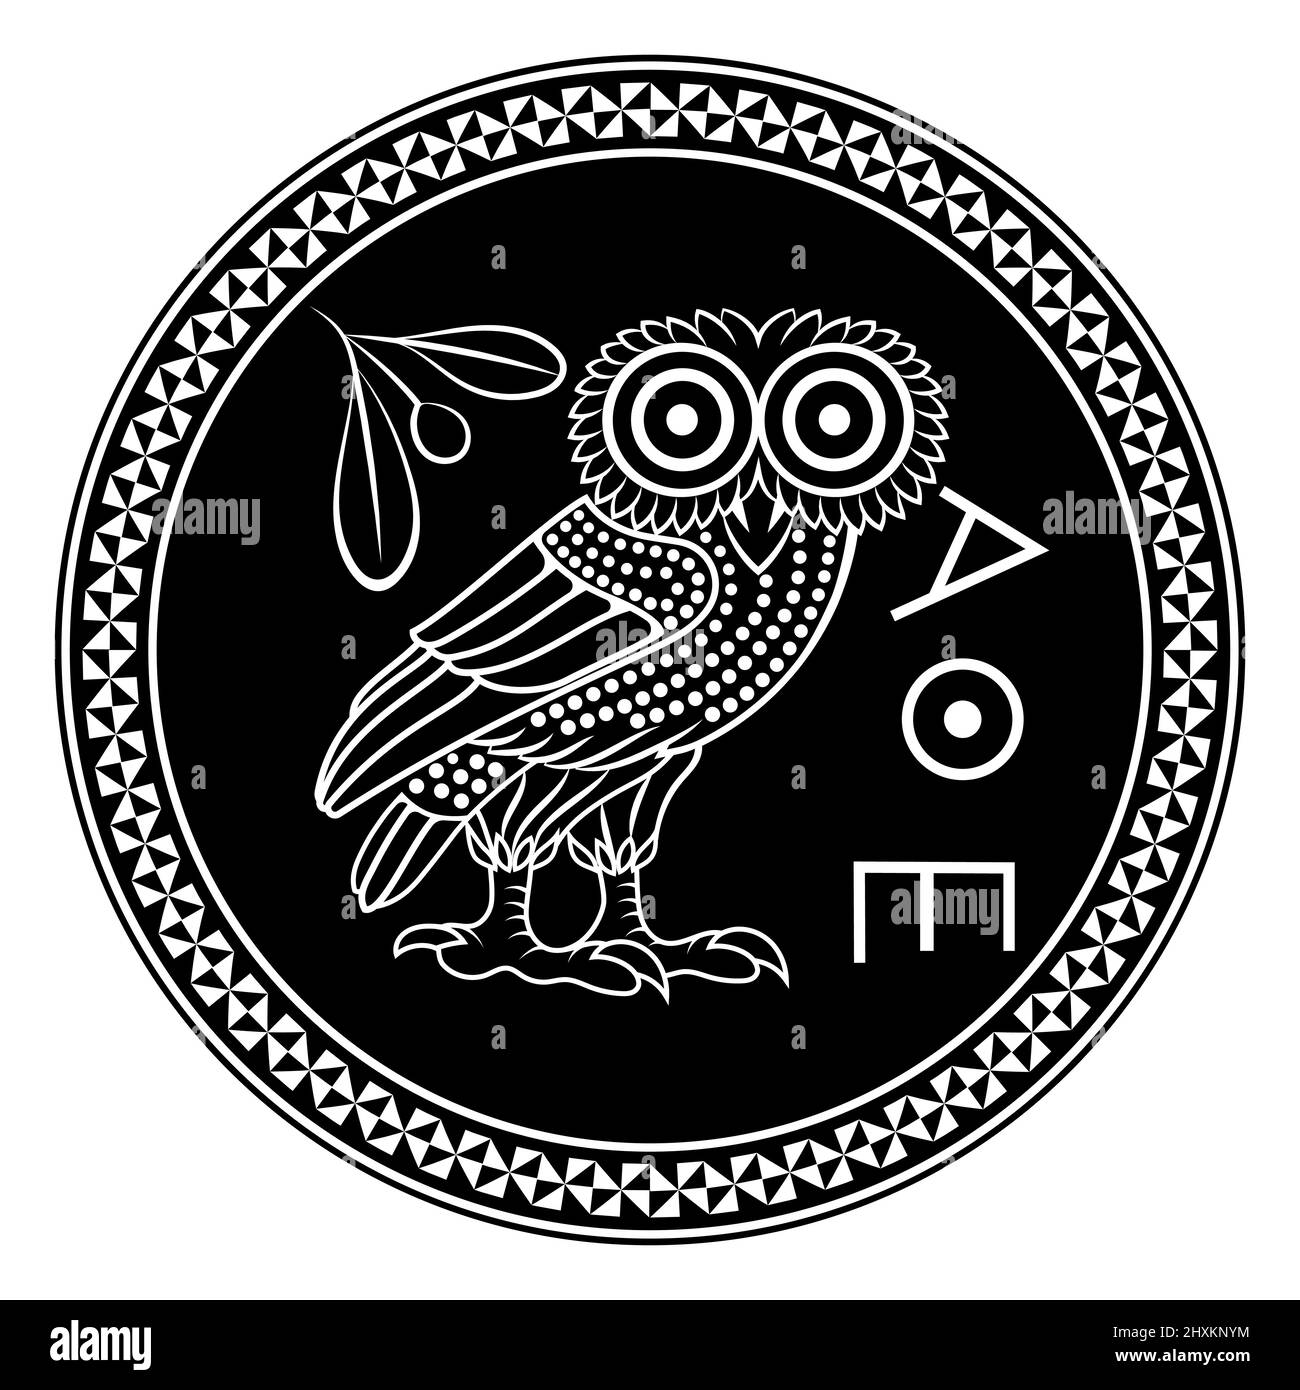 Antica moneta greca di Atene, illustrazione d'epoca. Vecchia illustrazione incisa di un gufo e di un ramo di olivo Illustrazione Vettoriale